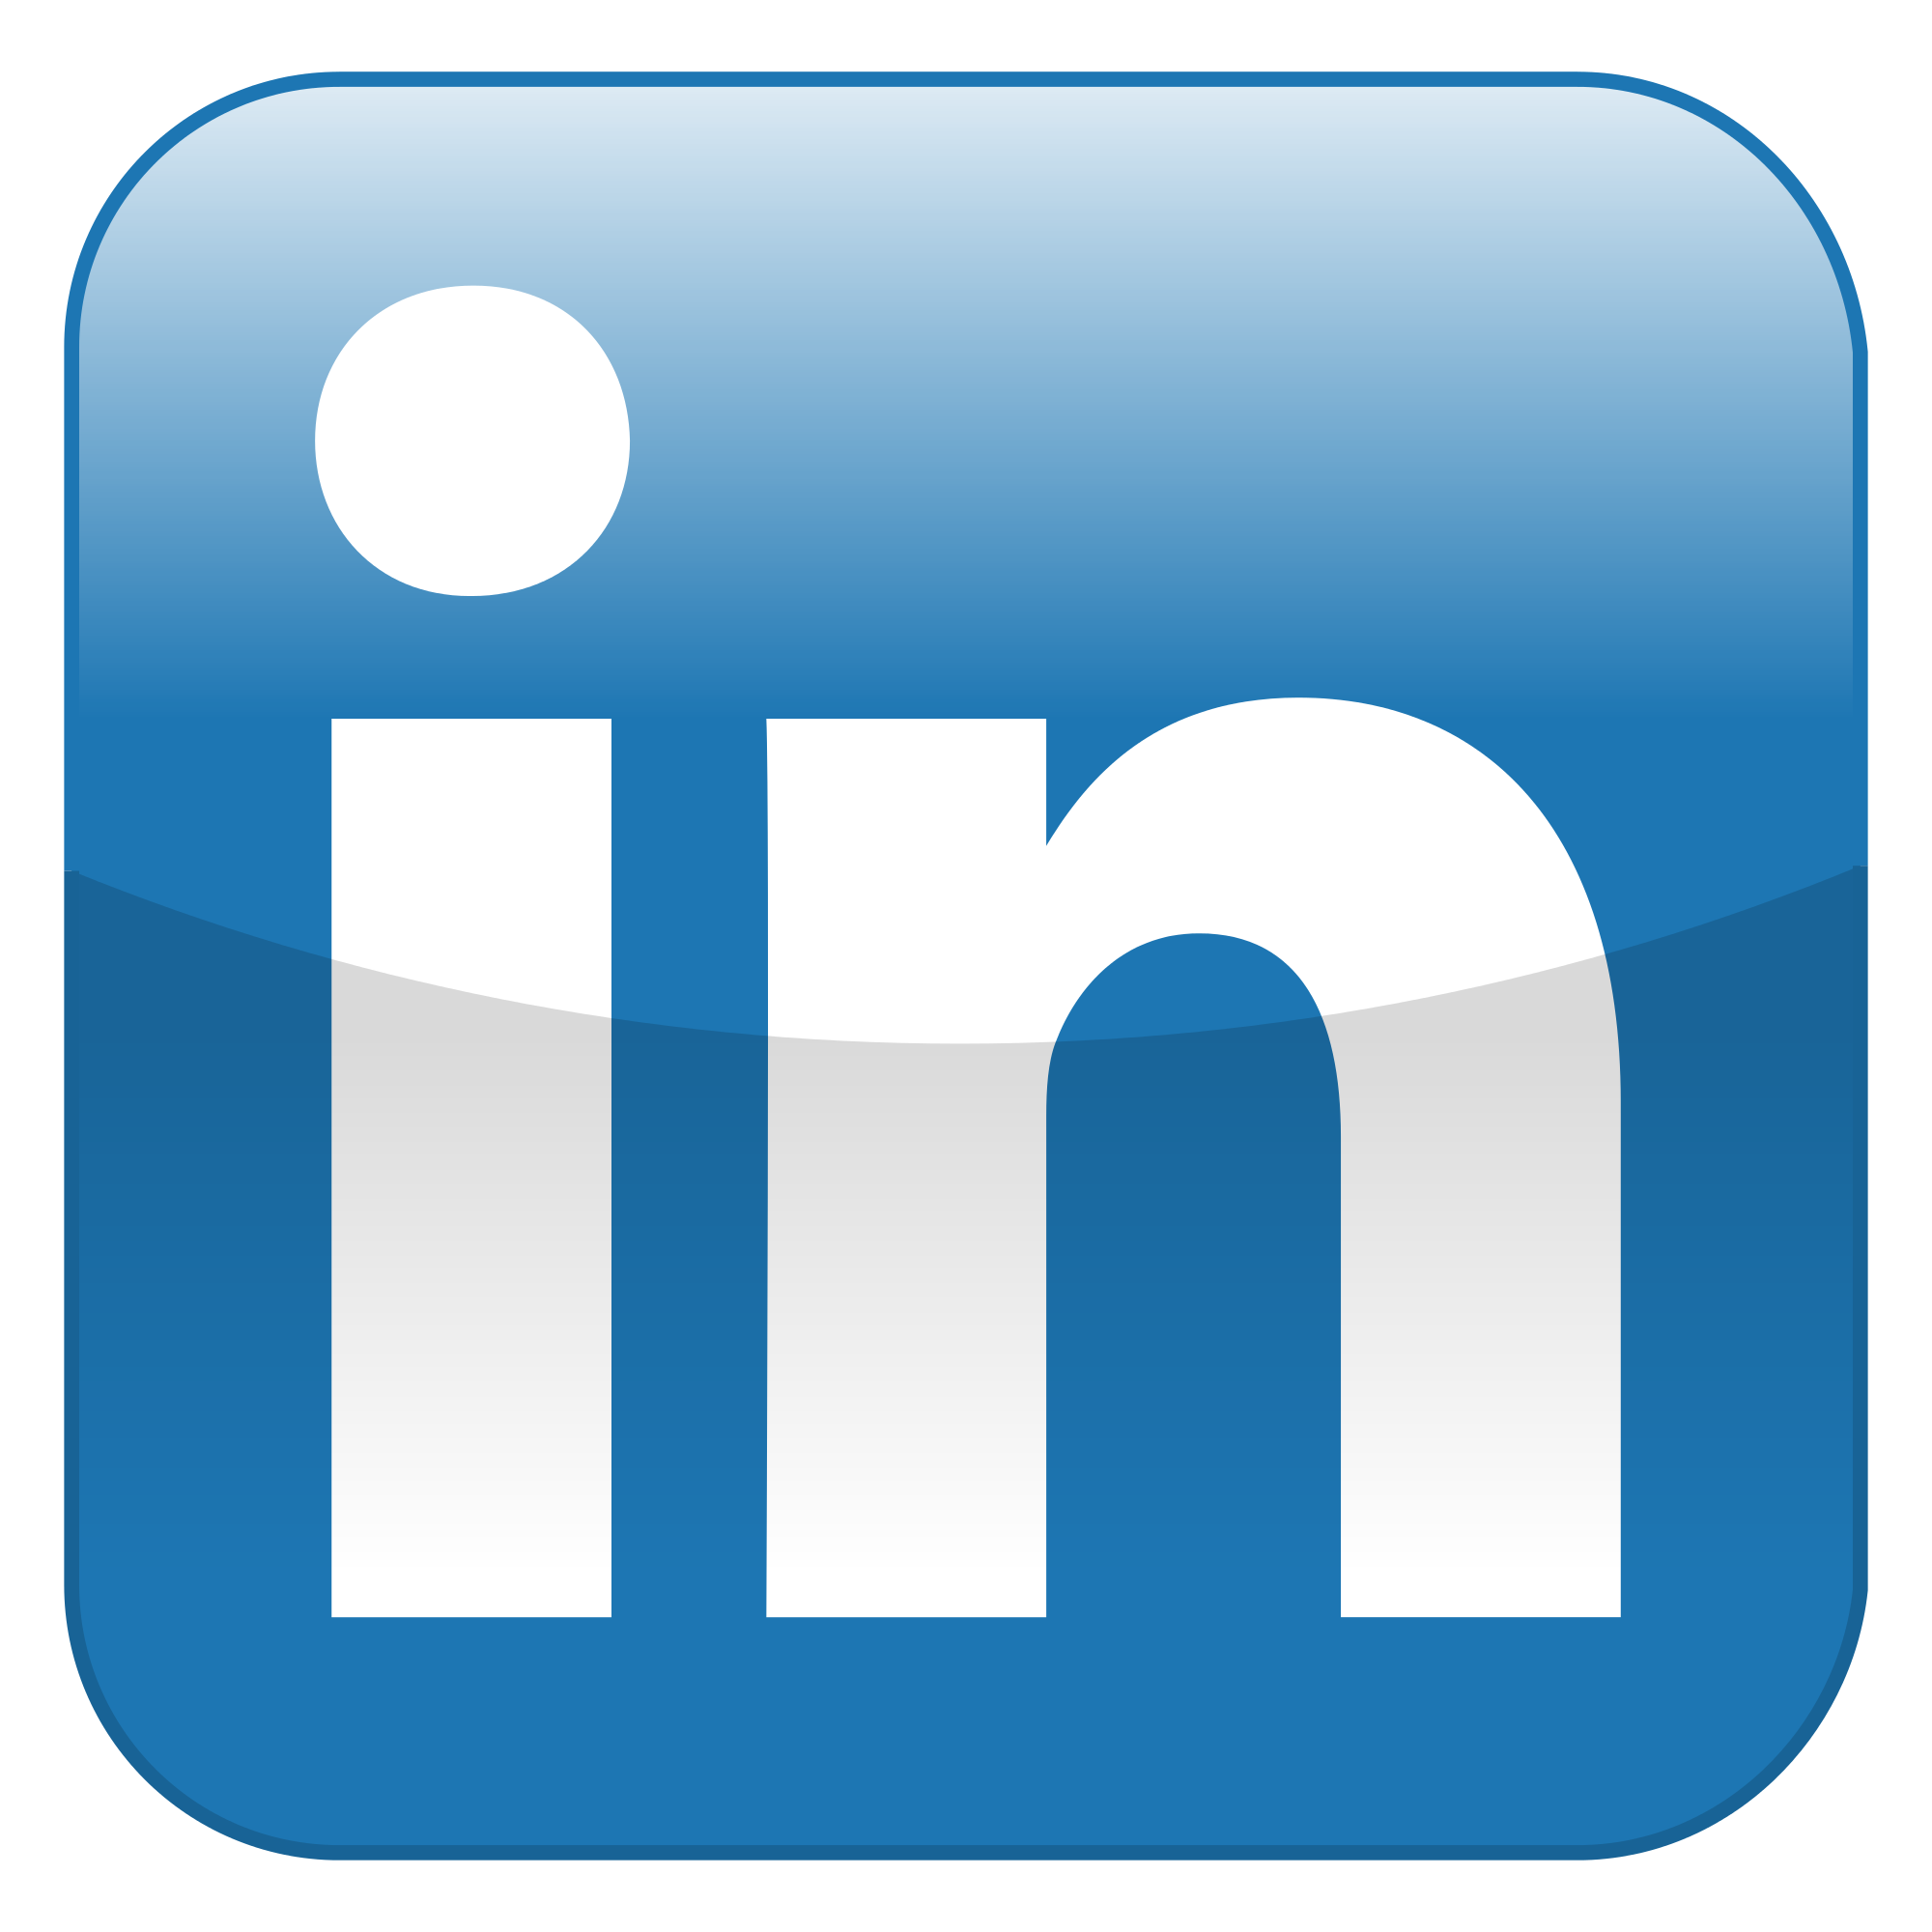 LinkedIn logo PNG transparent image download, size: 2000x2000px